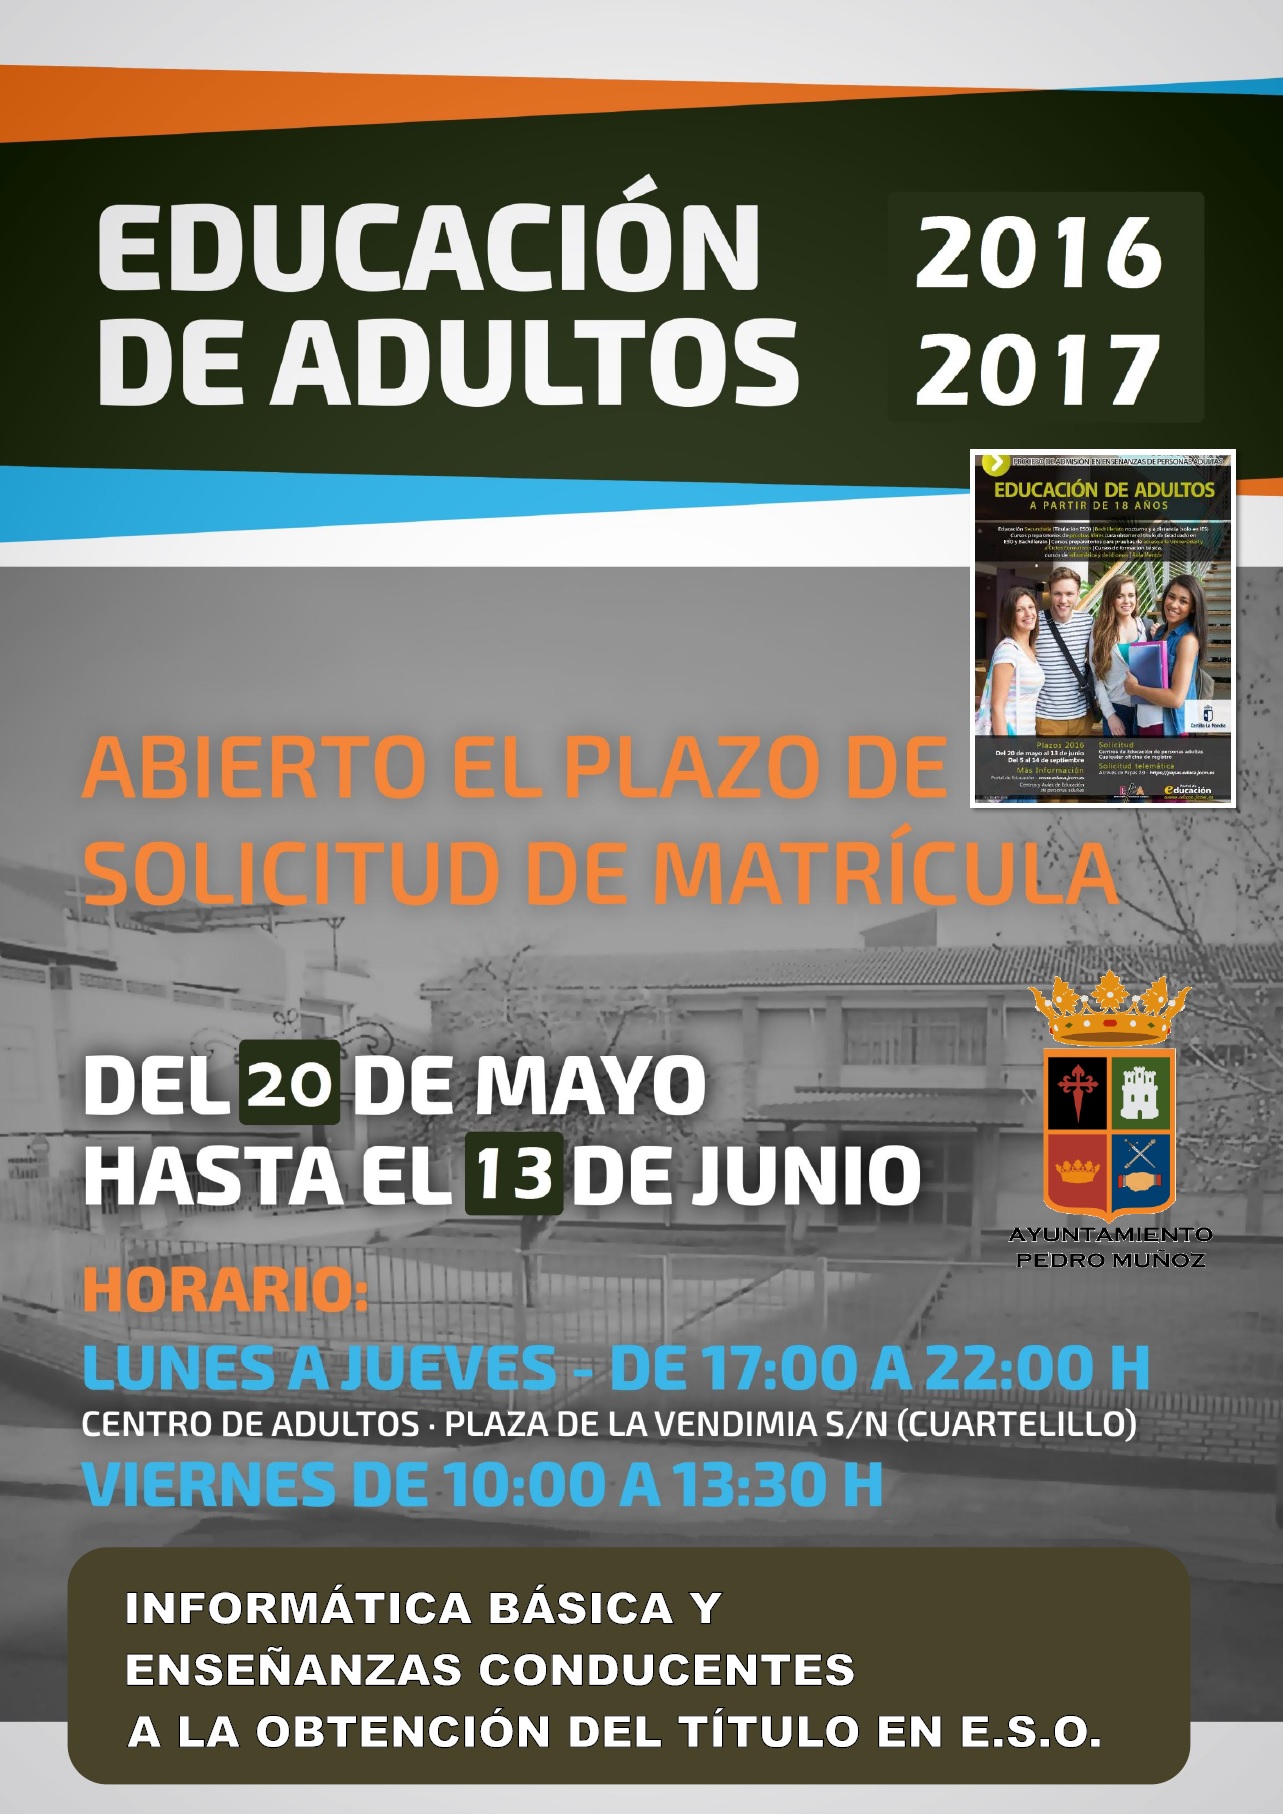 Del 20 de Mayo al 13 de Junio se abre el plaza de admisión para enseñanzas el el aula de adultos de Pedro Muñoz